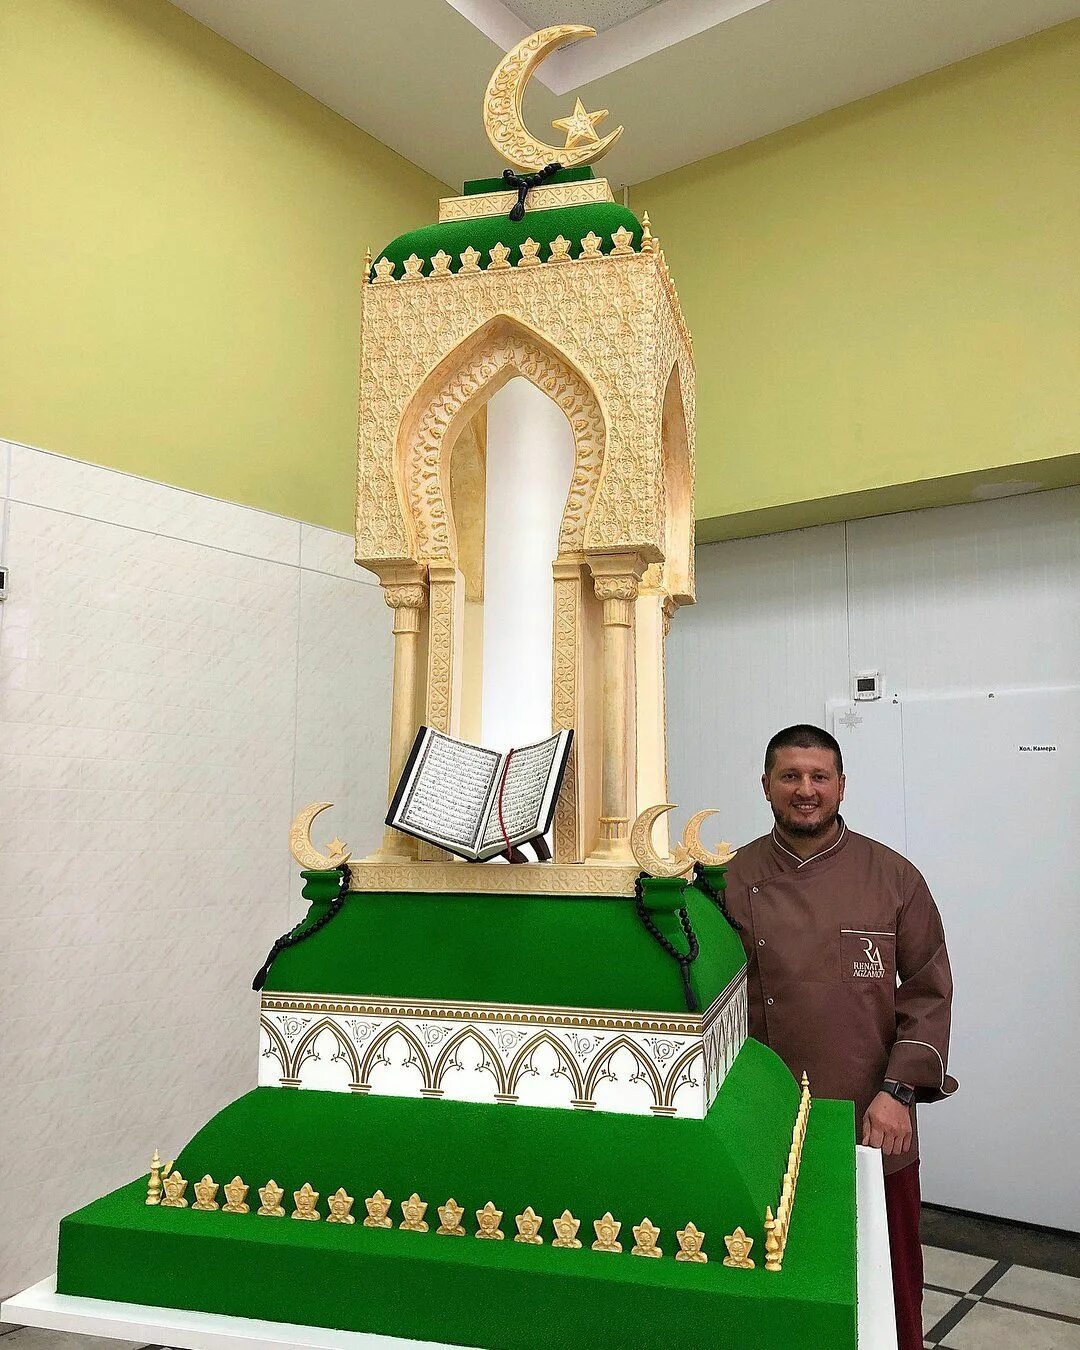 Подарки на уразу. Ренат Агзамов его торты мечеть. Ренат Агзамов мусульманский торт.